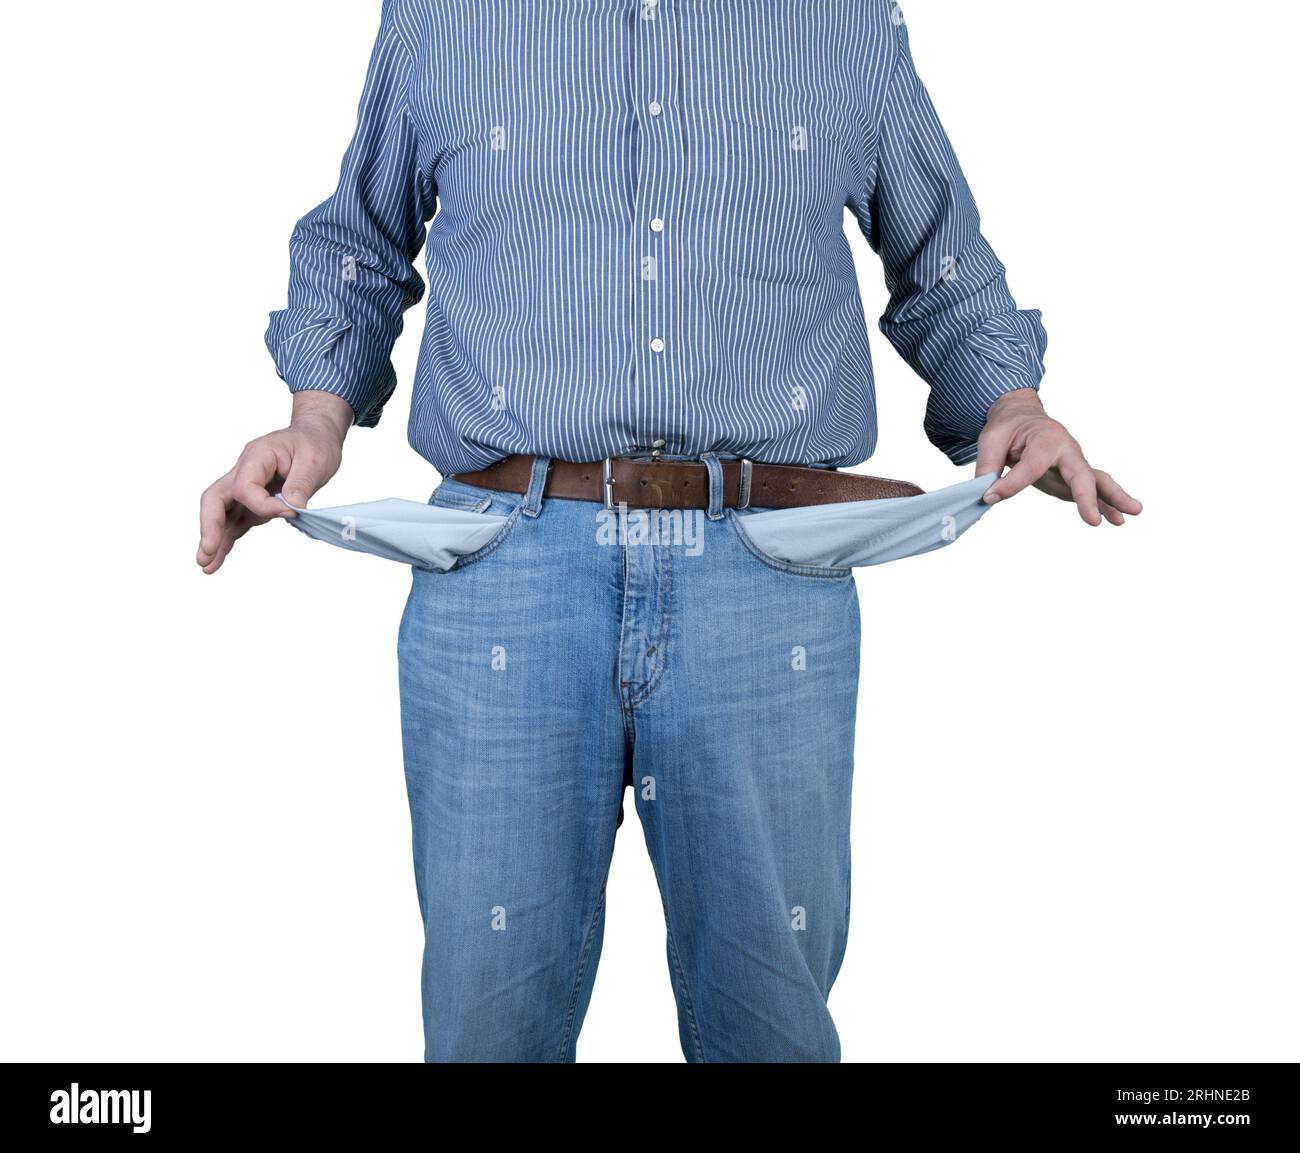 un homme sans argent avec des poches vides sur un fond transparent Banque D'Images